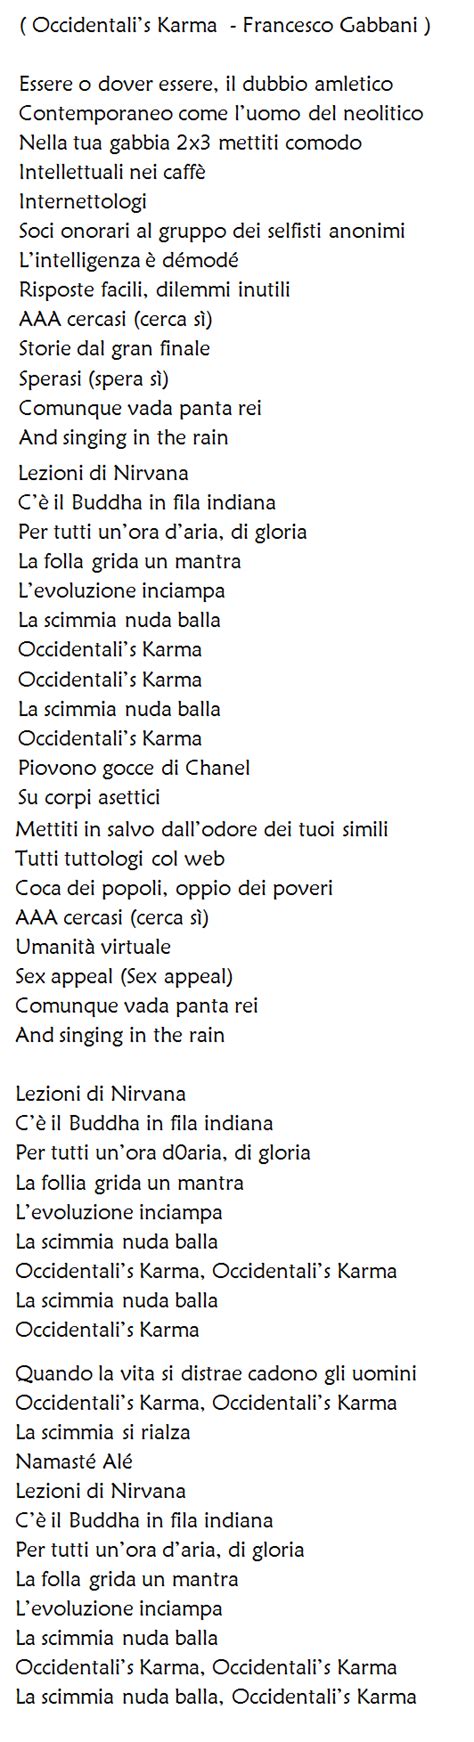 Francesco Gabbani Occidentali S Karma Testo E Video Della Canzone My